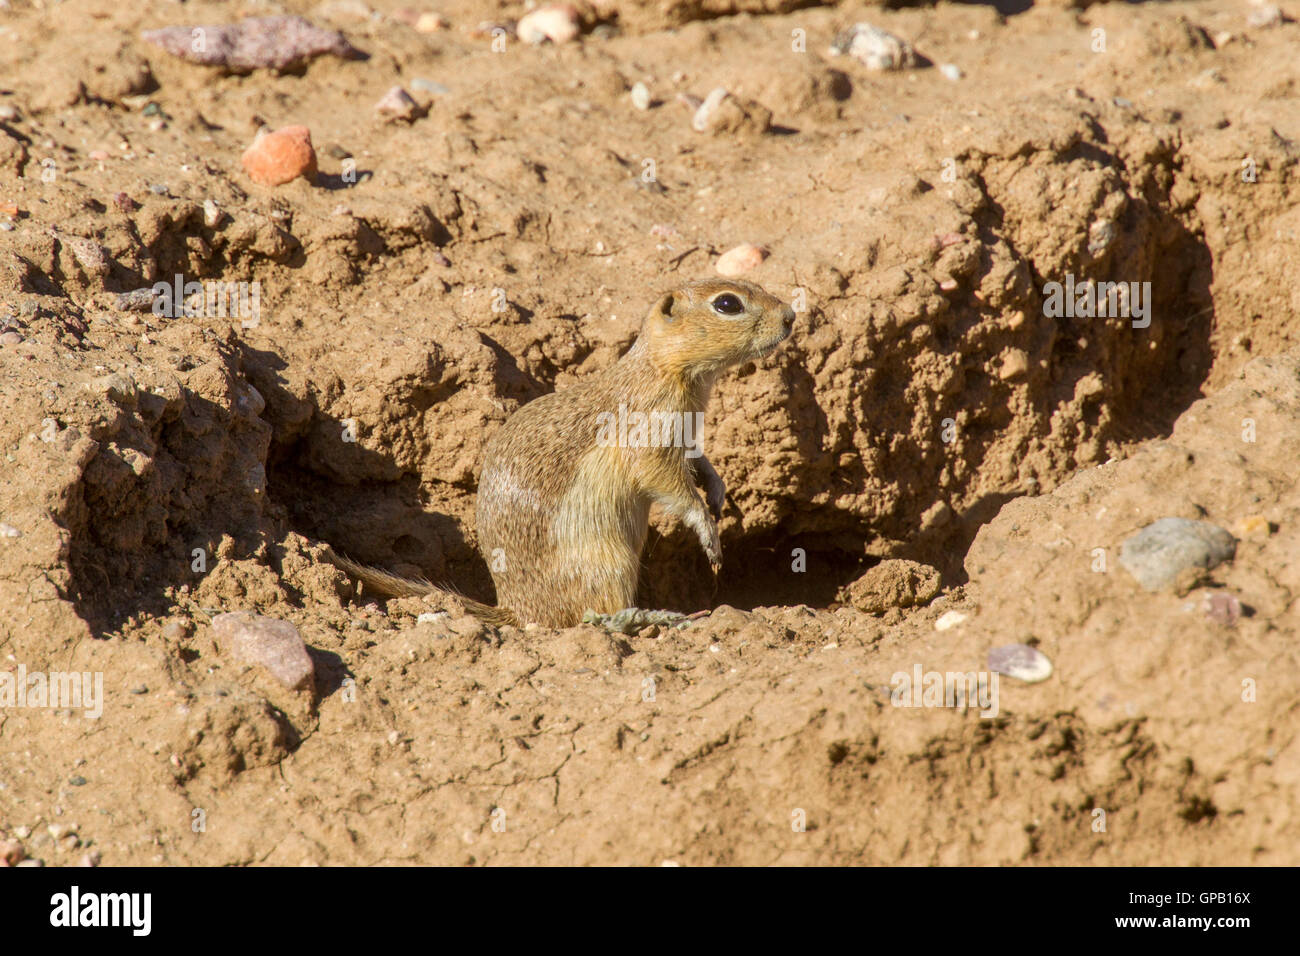 Massa Piute Urocitellus scoiattolo mollis 30 miglia a sud di castoro, Utah, Stati Uniti 5 luglio 2016 adulto presso burrow ingresso Foto Stock